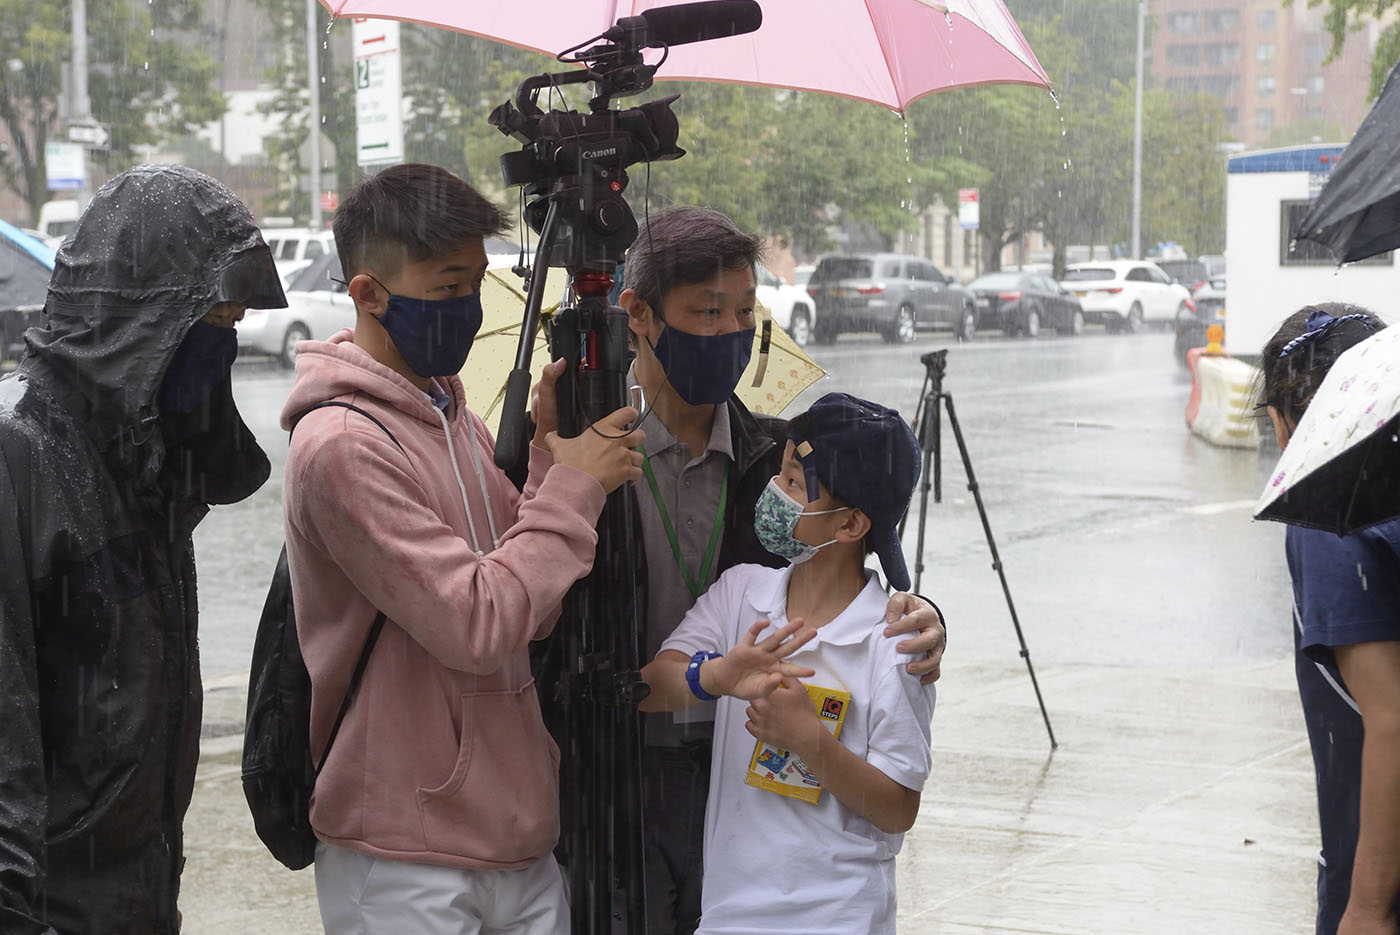 人文真善美志工邱志遠與慈少Terry，在開幕過程降下傾盆大雨時，父子倆一人拍攝一人打傘，仍繼續錄影捕捉重要畫面。攝影／朱澤人